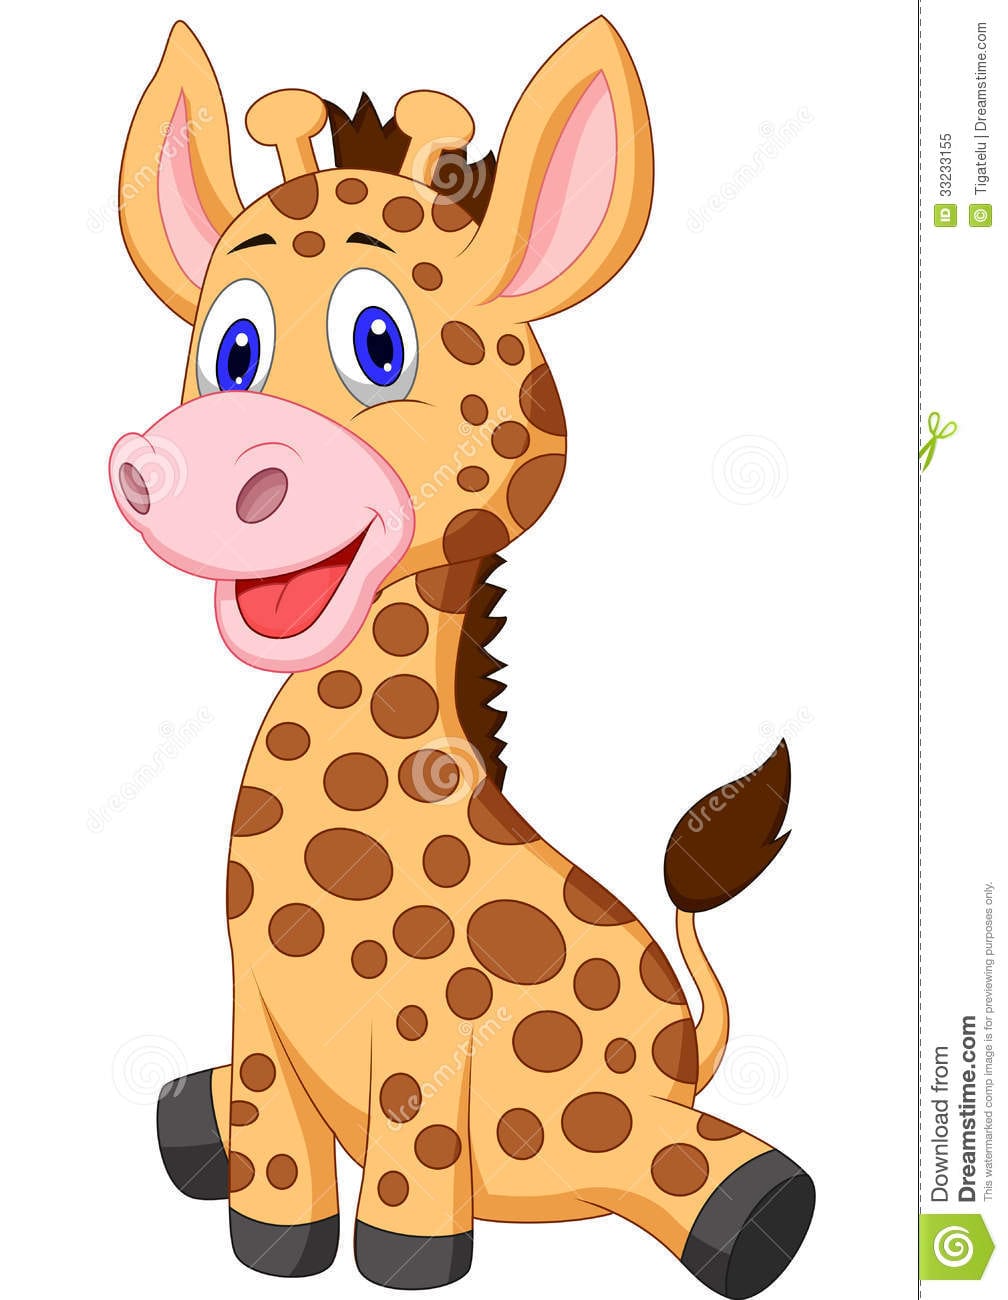 Desenhos Animados Bonitos Do Girafa Do BebÃª IlustraÃ§Ã£o Do Vetor